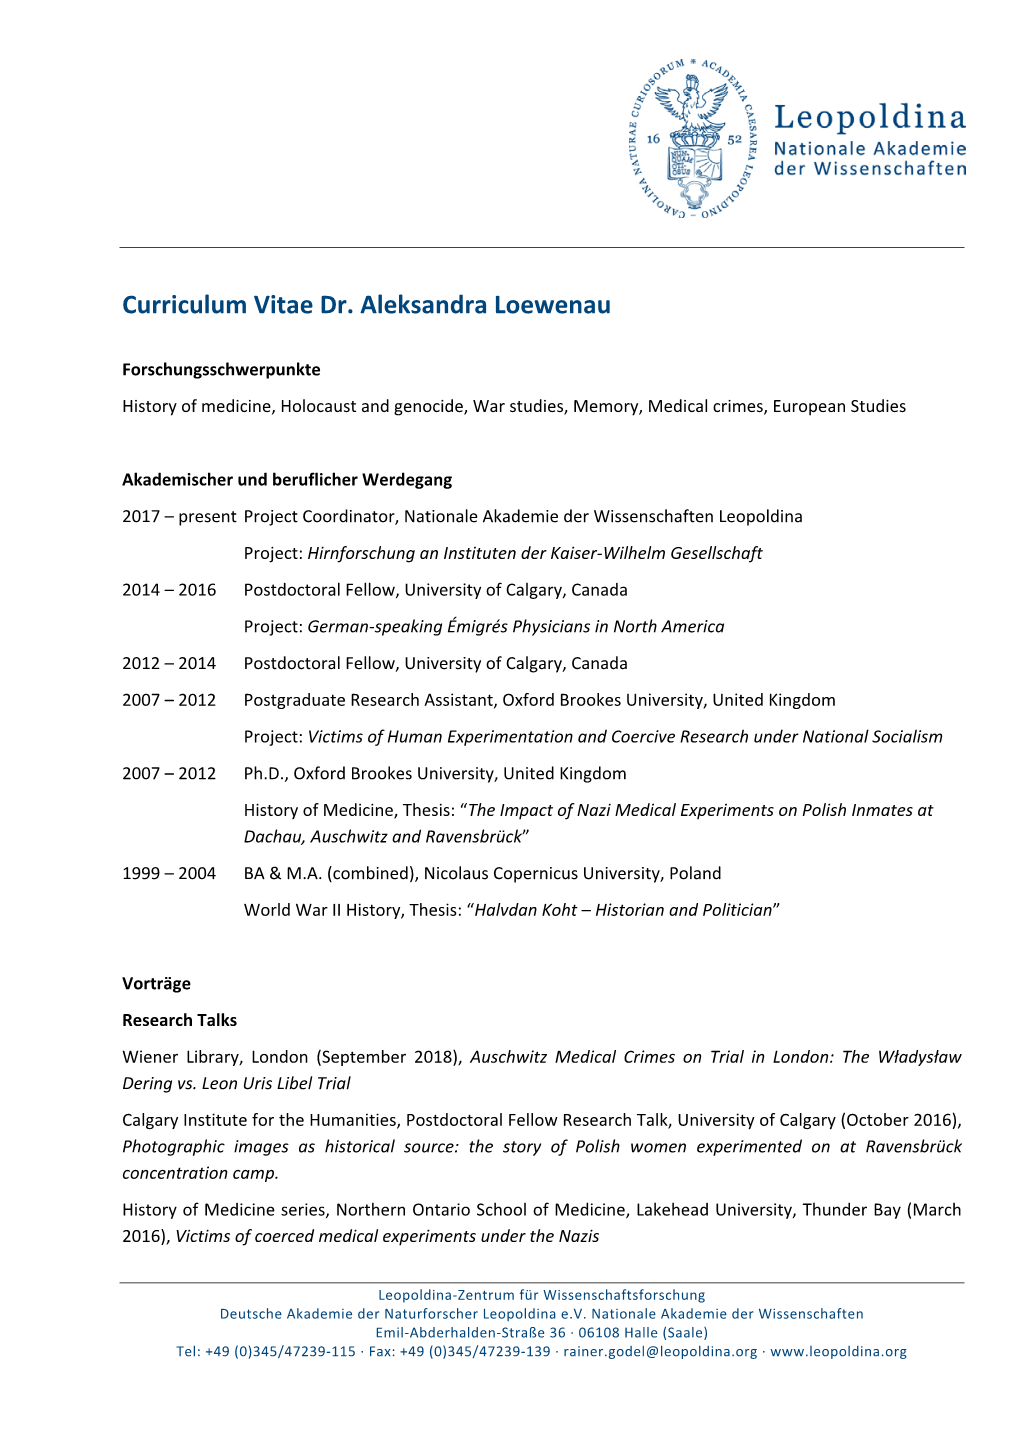 Curriculum Vitae Dr. Aleksandra Loewenau